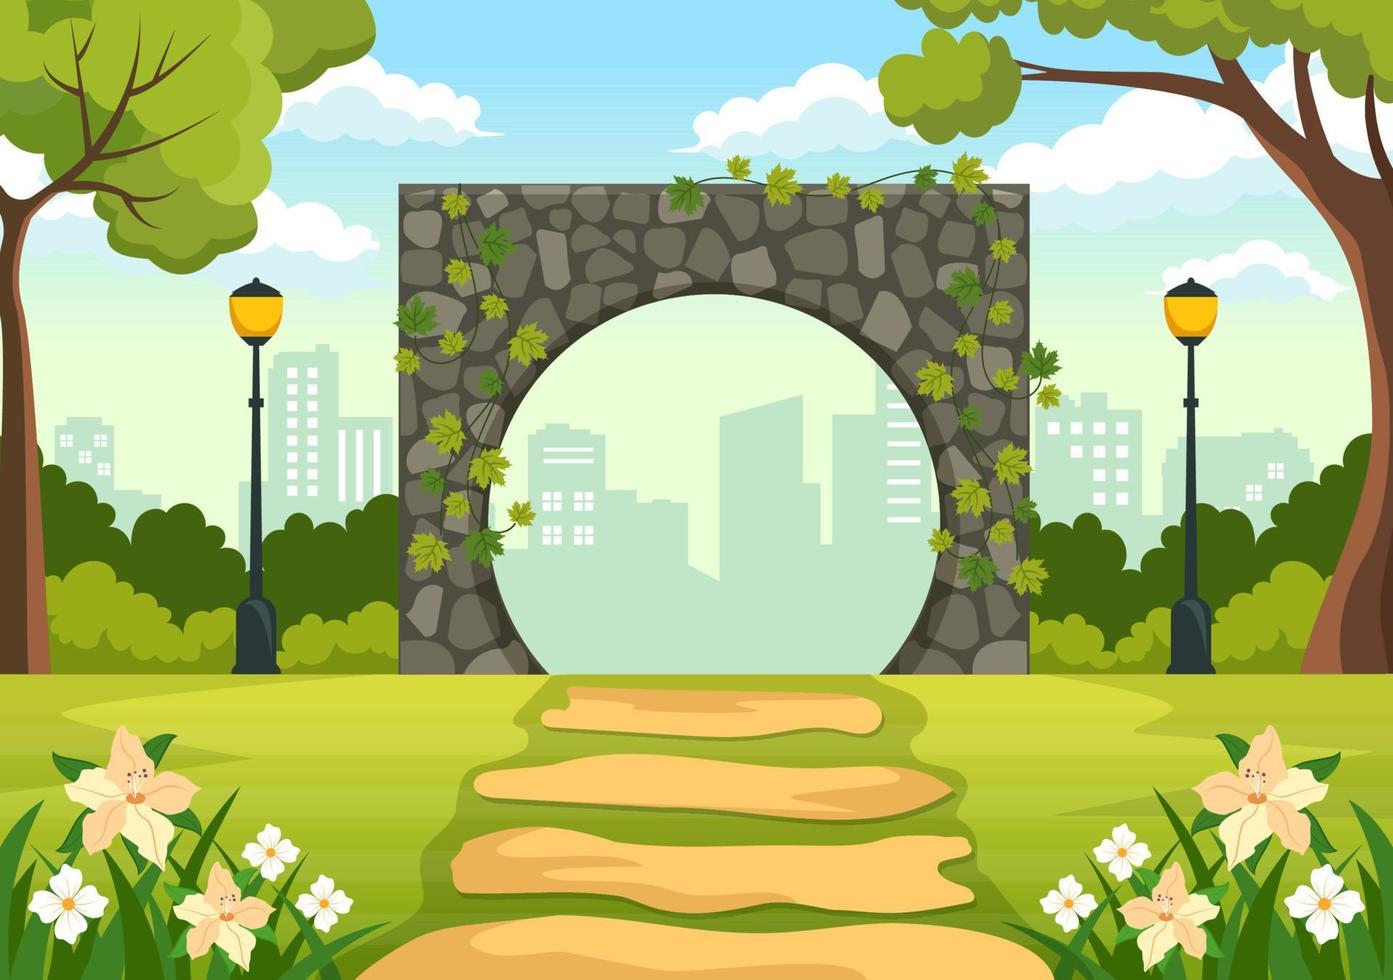 portal con entrada de arco de piedra de paisaje de verano al parque público, hierba verde o jardín en dibujos animados planos ilustración de plantilla dibujada a mano vector